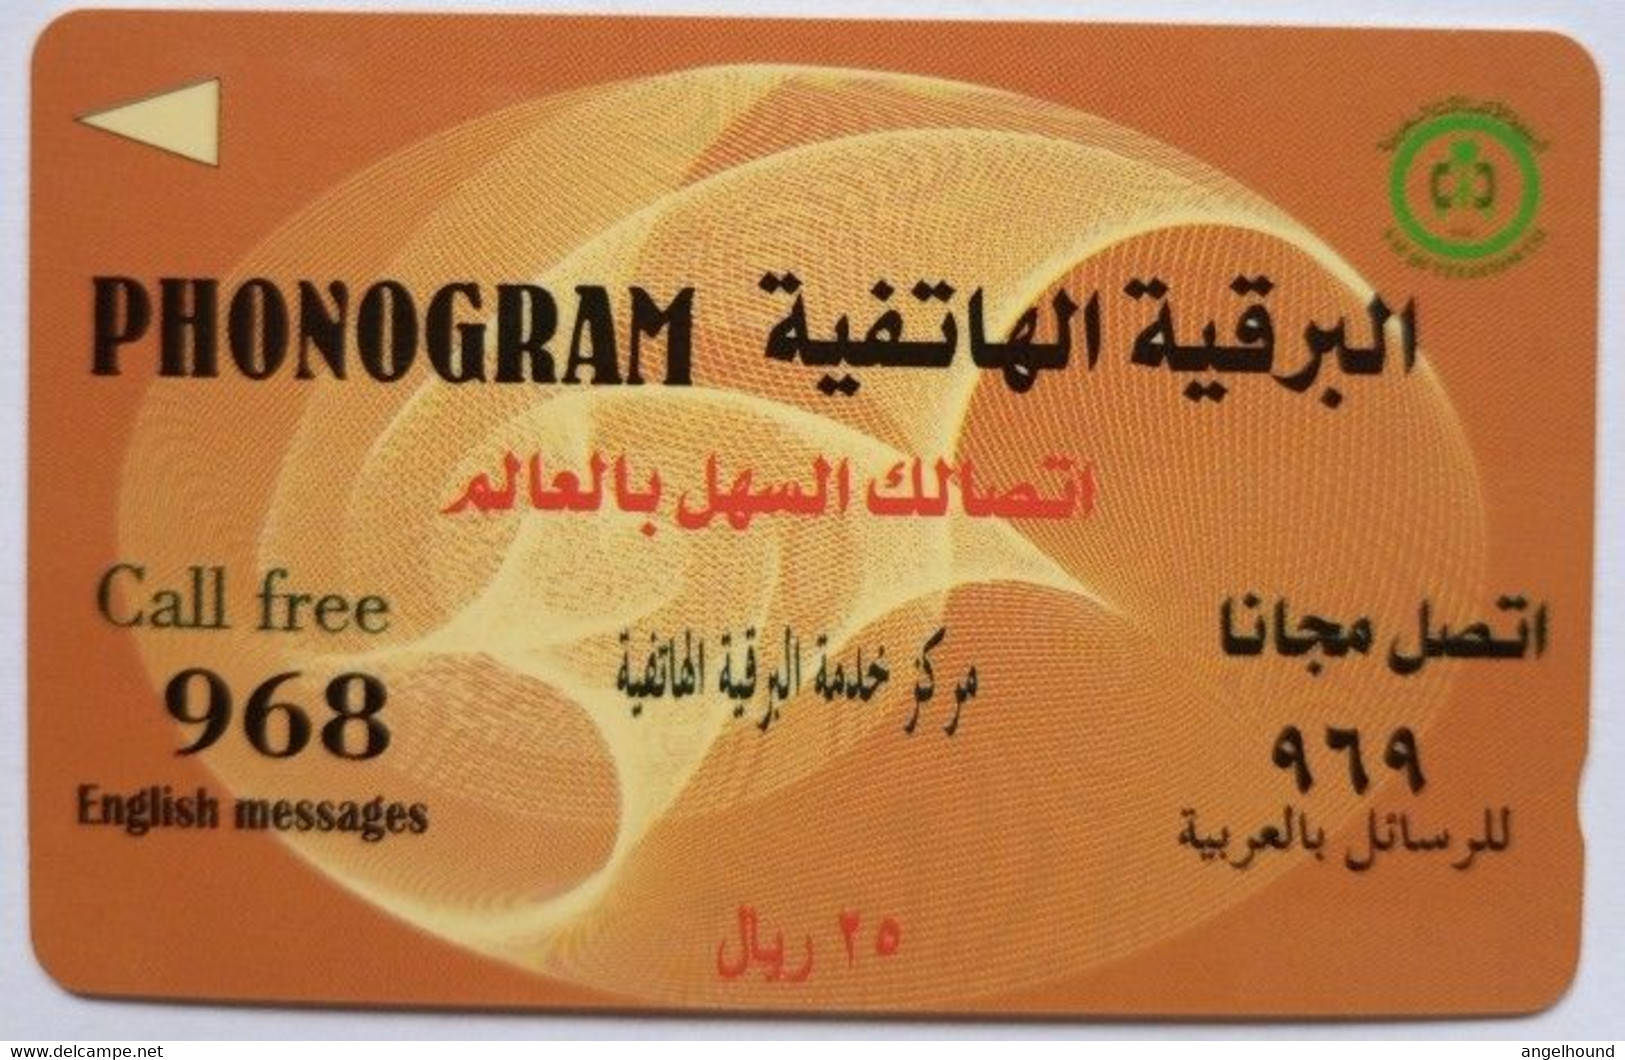 Saudi Arabia SAUDG 25 Riyals " Phonogram " - Saudi Arabia